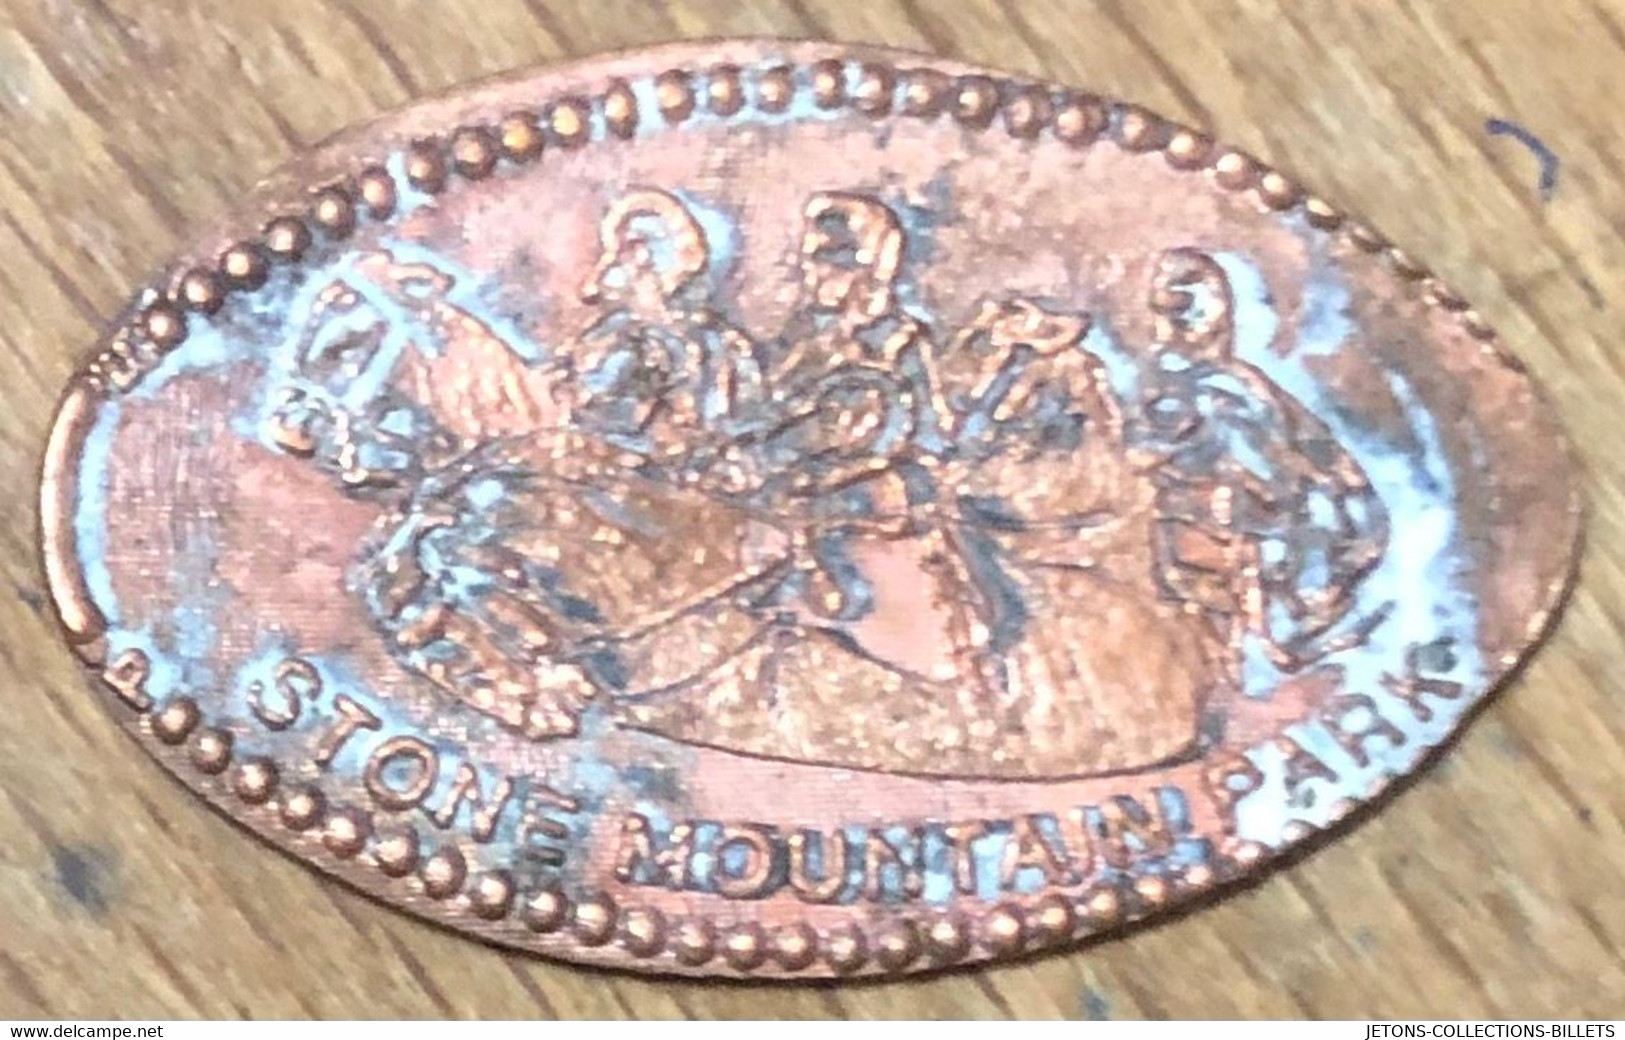 ÉTATS-UNIS USA STONE MOUNTAIN PARK PIÈCE ÉCRASÉE PENNY ELONGATED COIN MEDAILLE TOURISTIQUE MEDALS TOKENS - Souvenirmunten (elongated Coins)